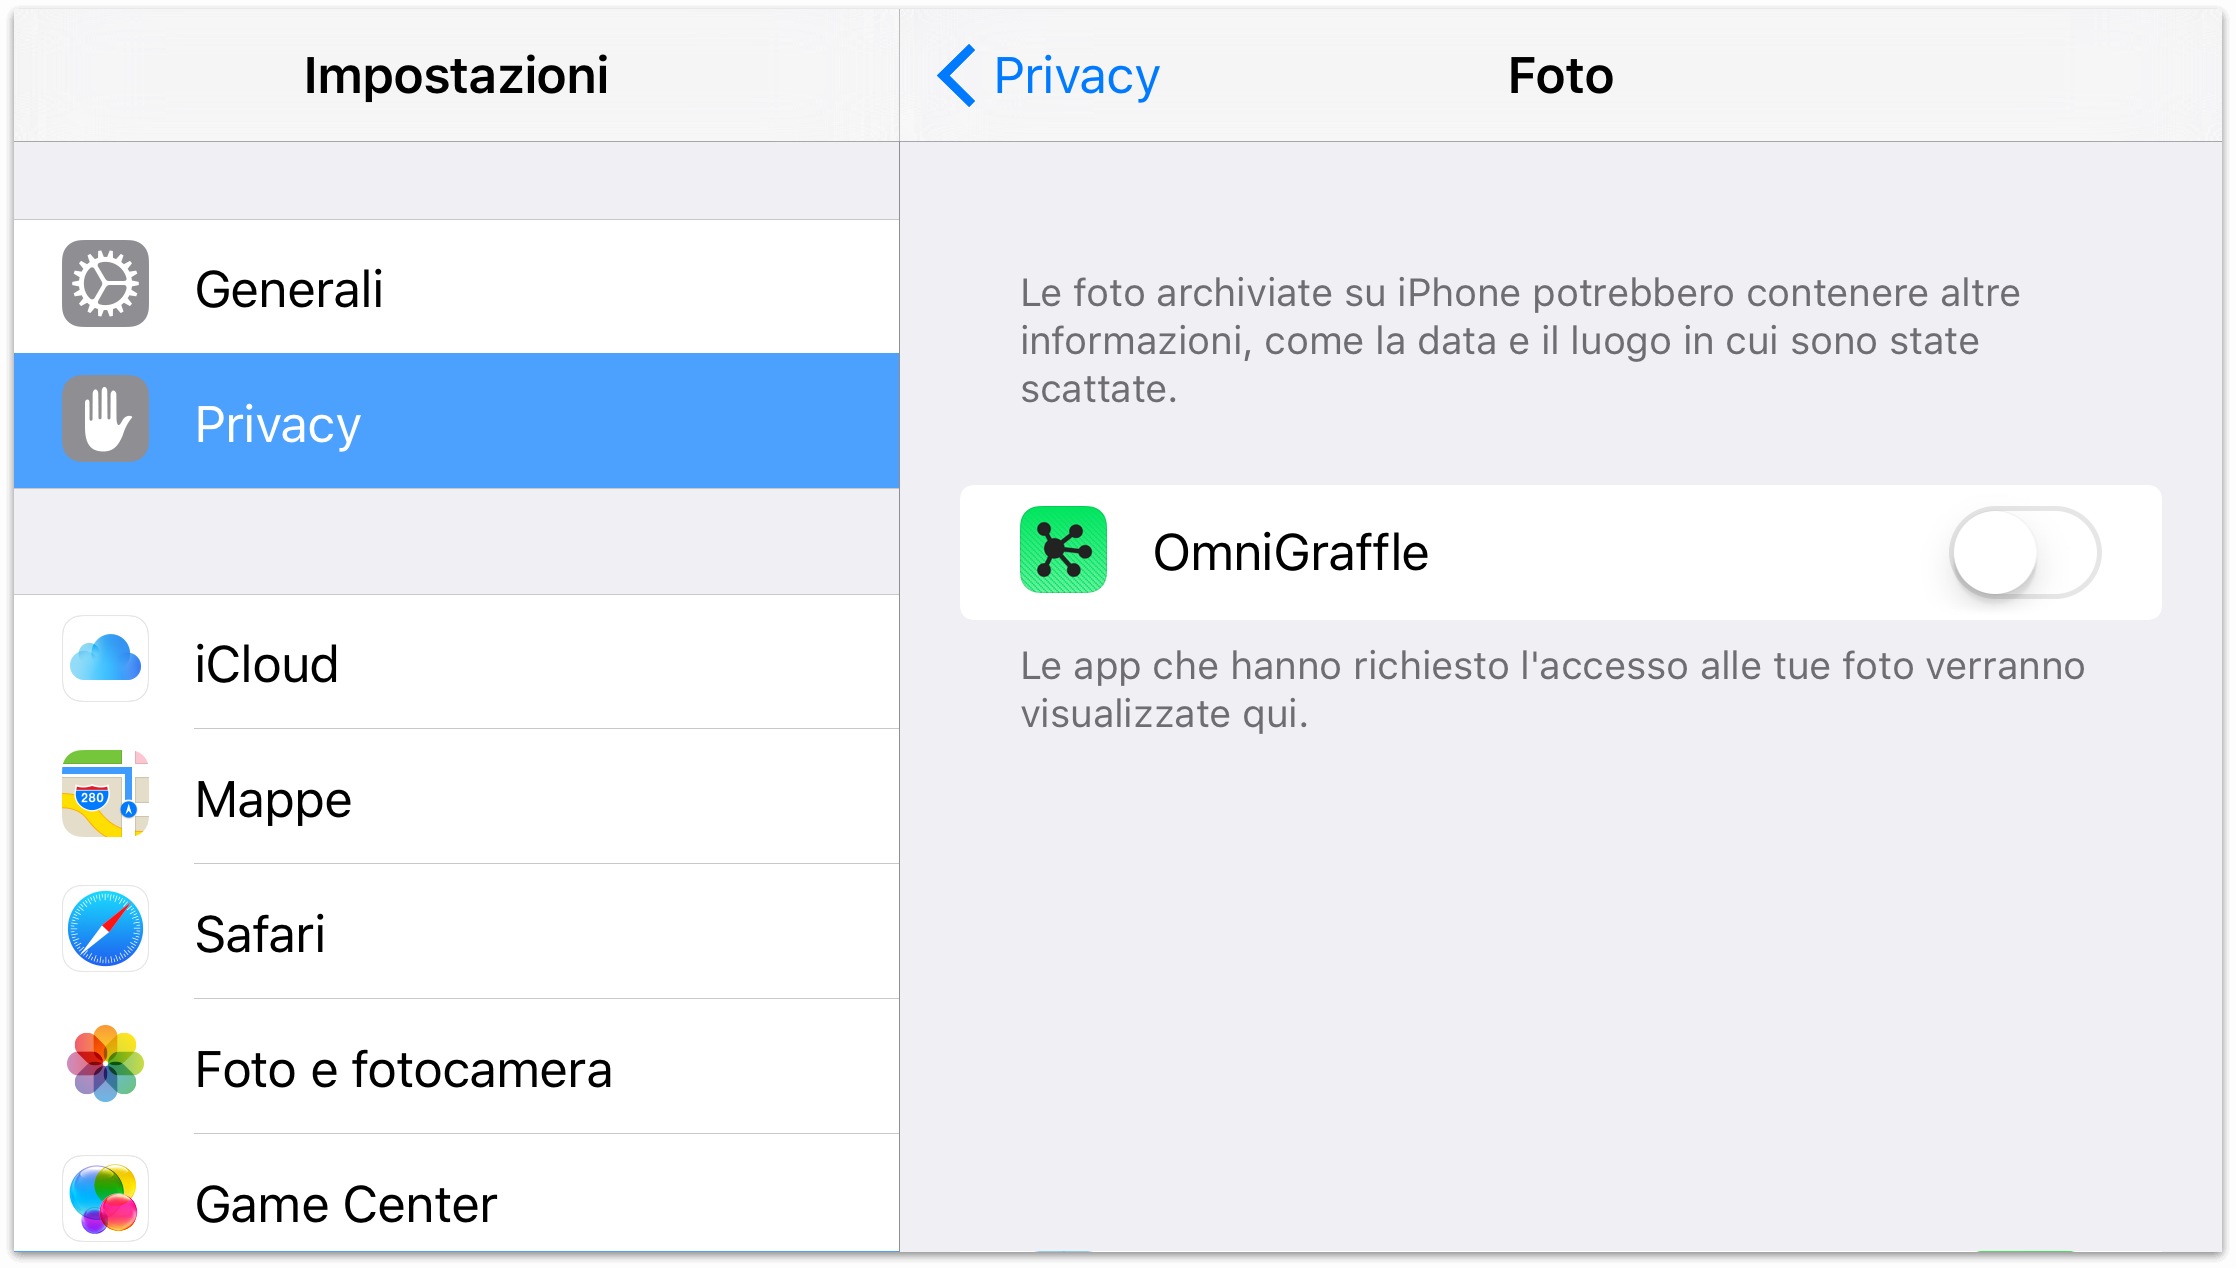 La scheda Privacy nell'app Impostazioni